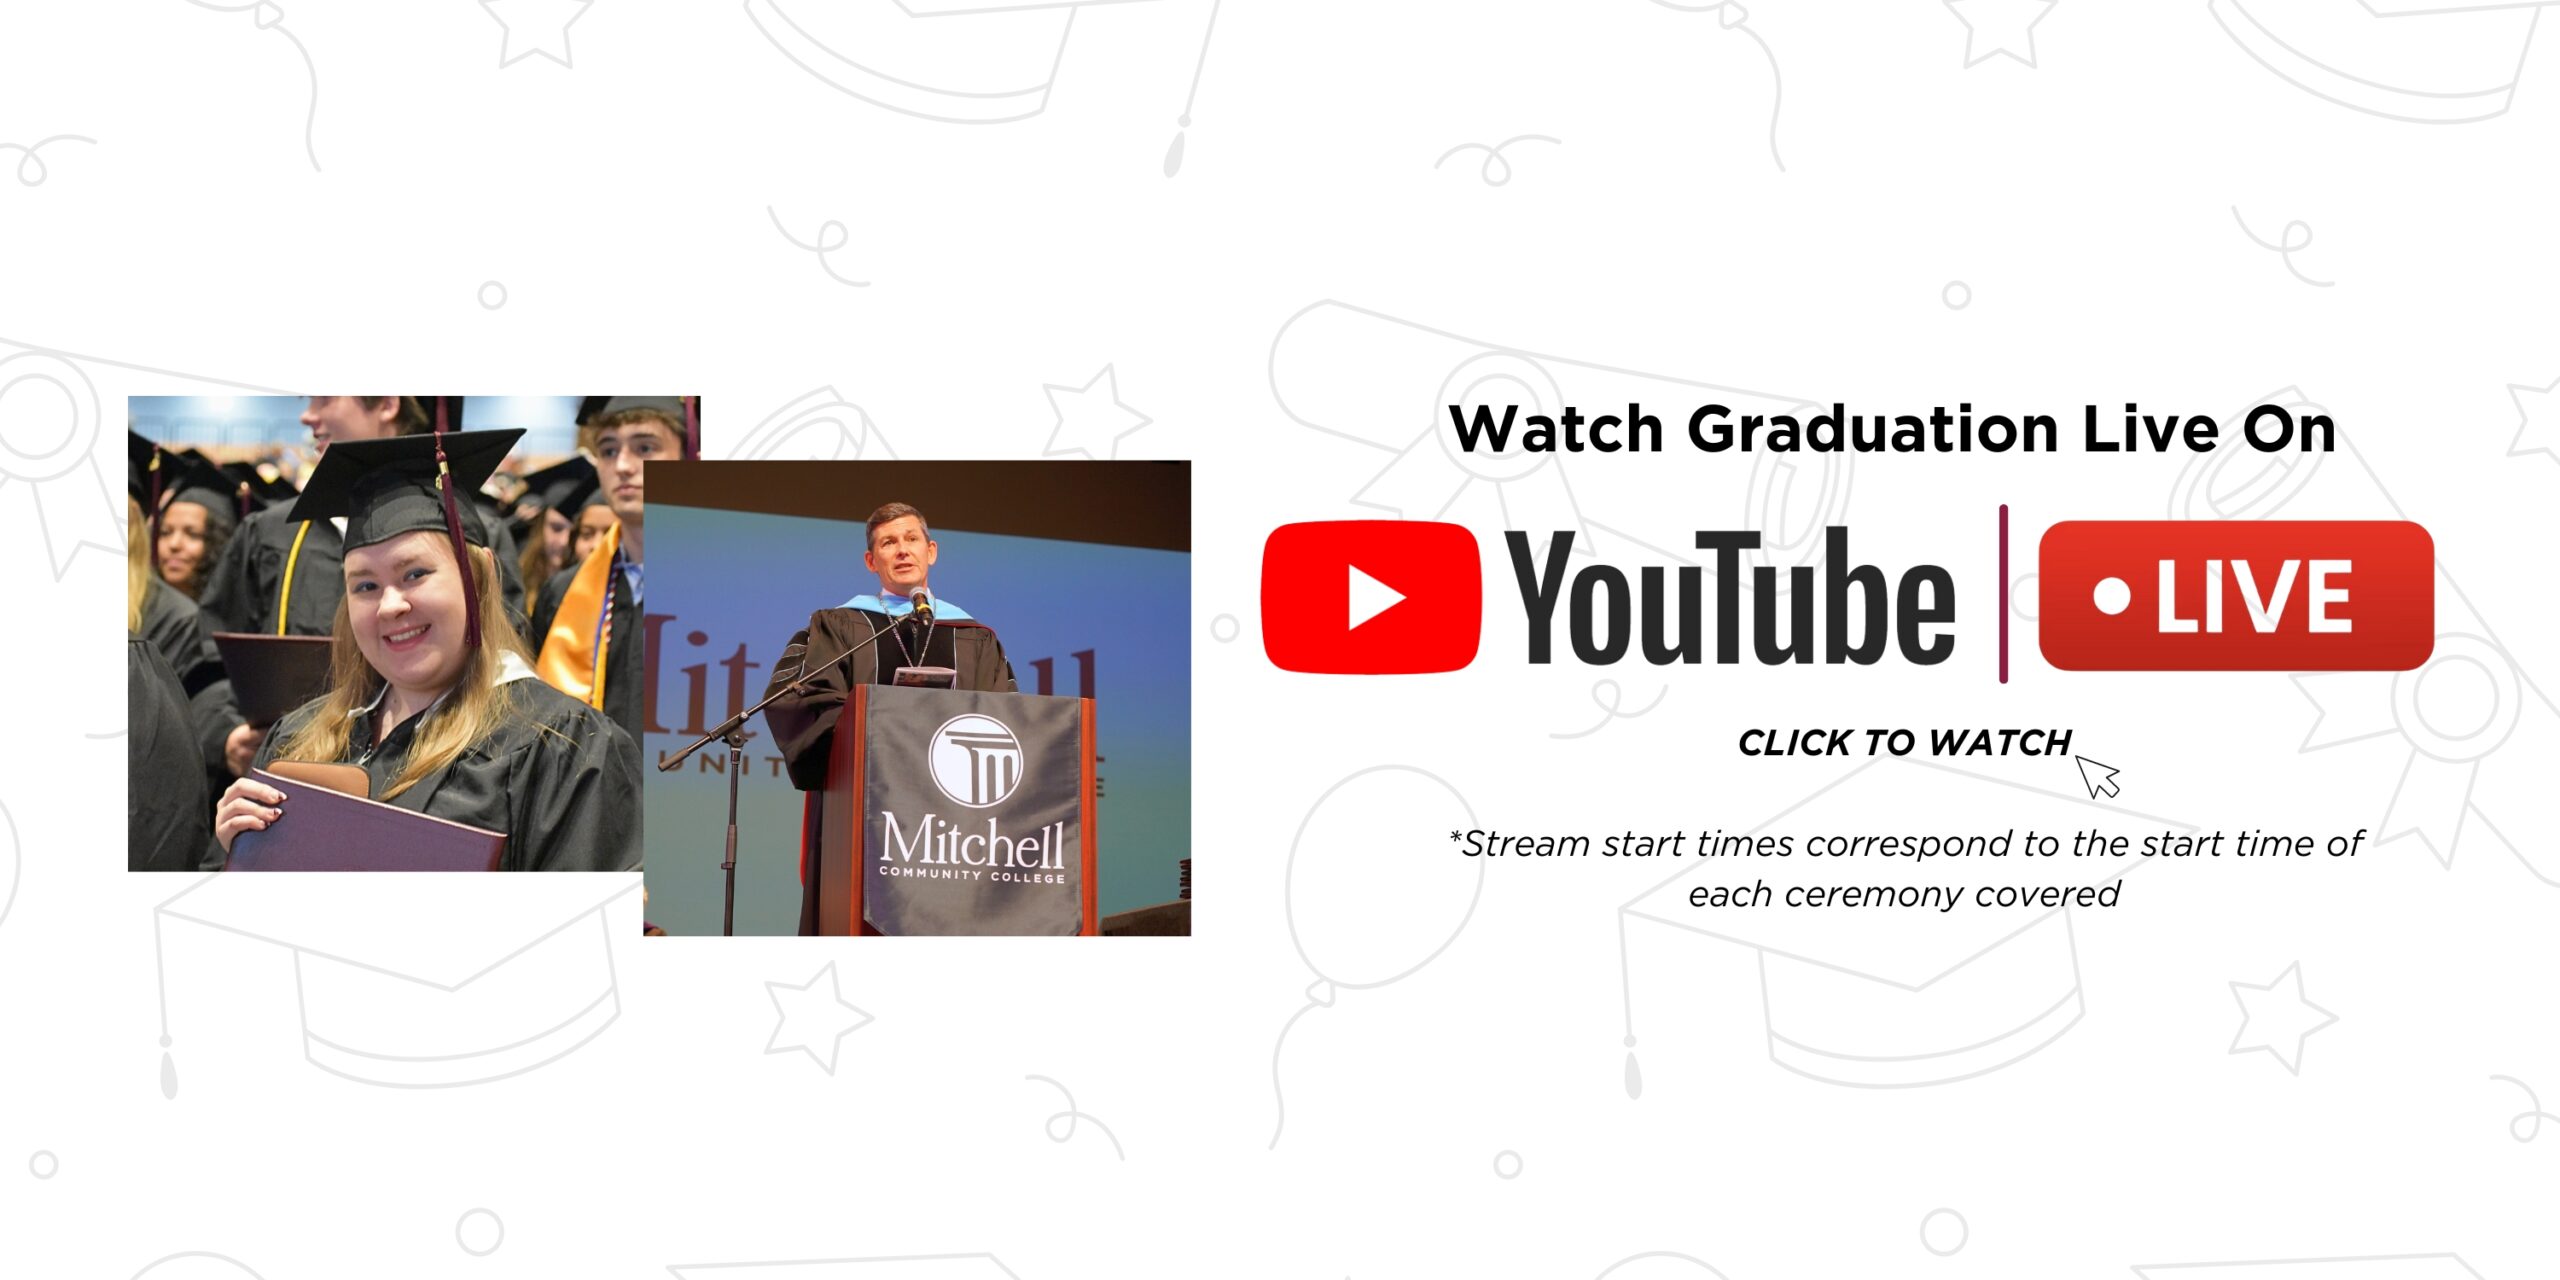 横幅上写着“在 YouTube 上观看毕业直播 | 点击观看 | *直播开始时间与所涵盖的每个仪式的开始时间相对应”。点击访问米切尔 YouTube 频道。